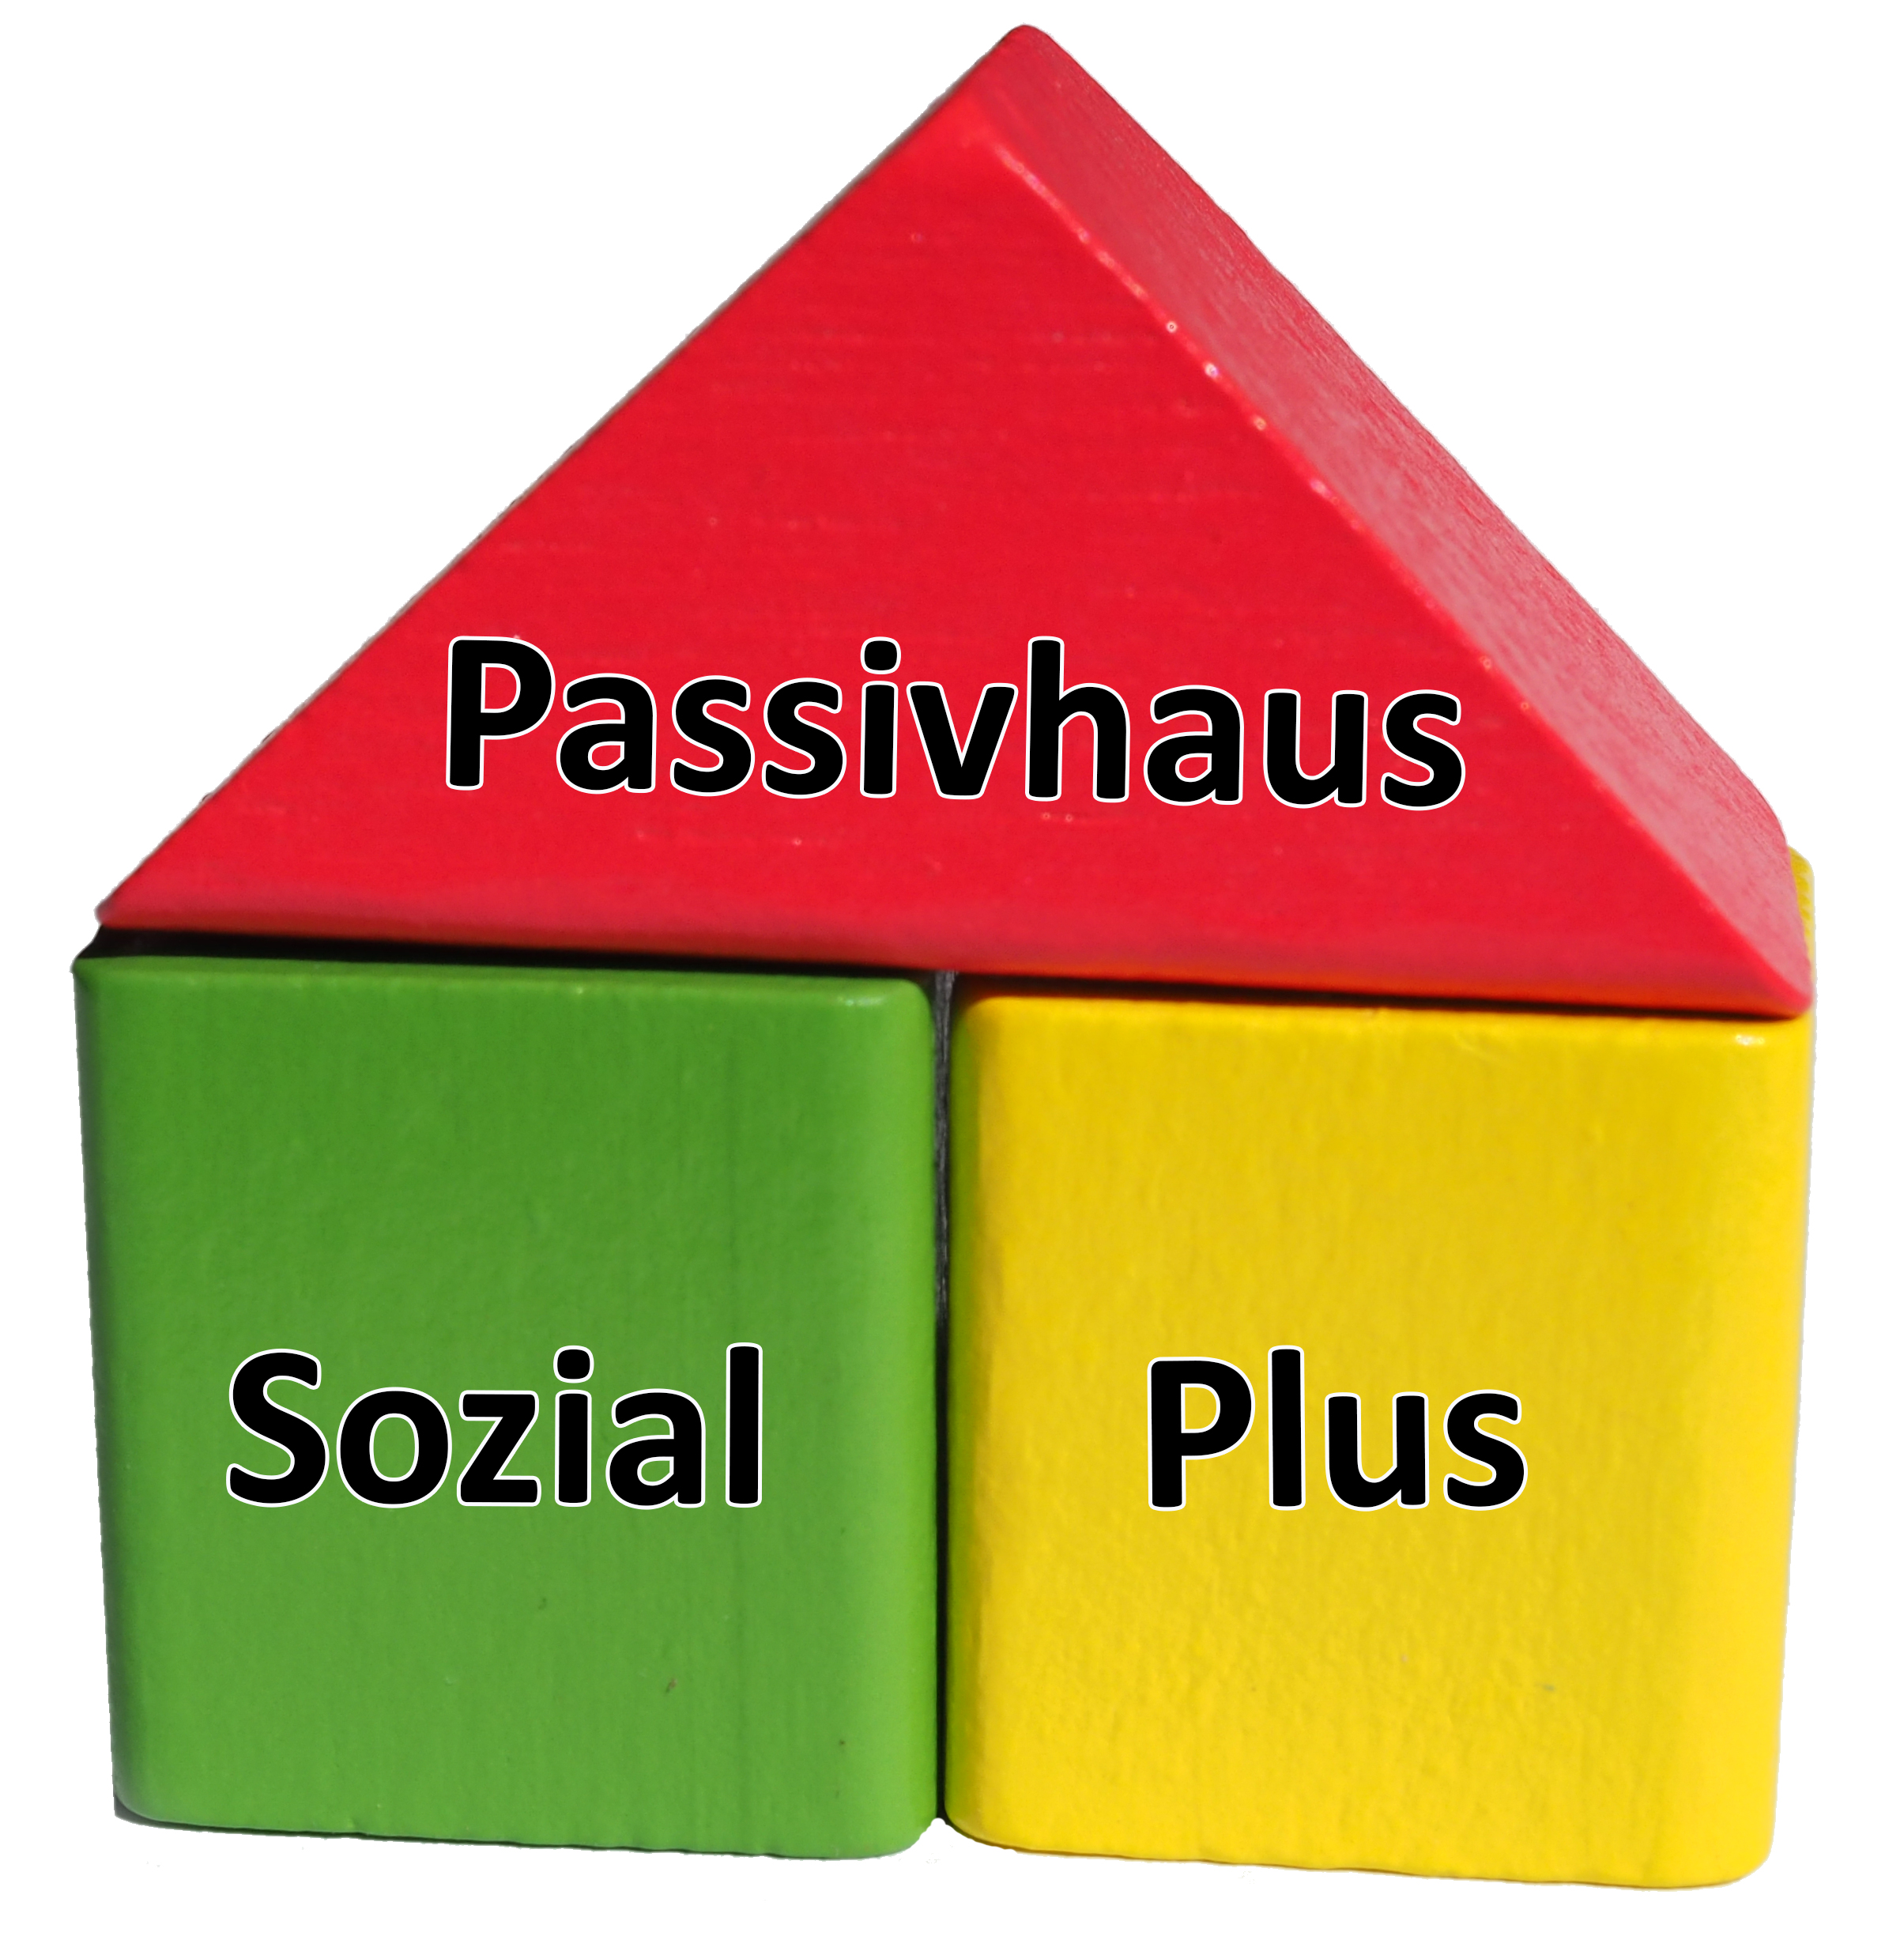 (c) Passivhaussozialplus.de